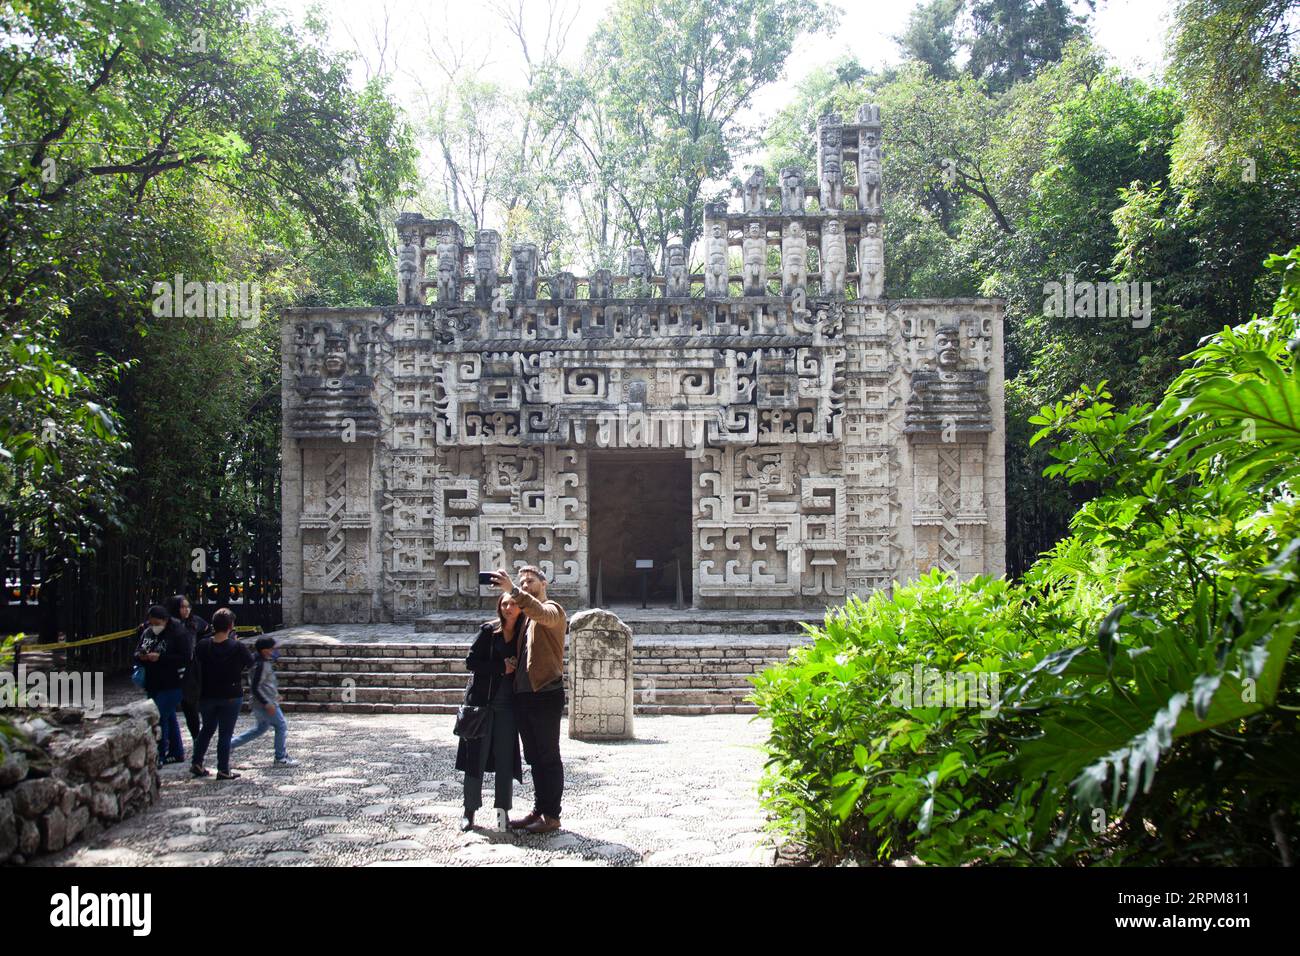 Hochob Edifice Reproduction in Gardens of Museo Nacional de Antropología in Mexico City, Mexico Stock Photo